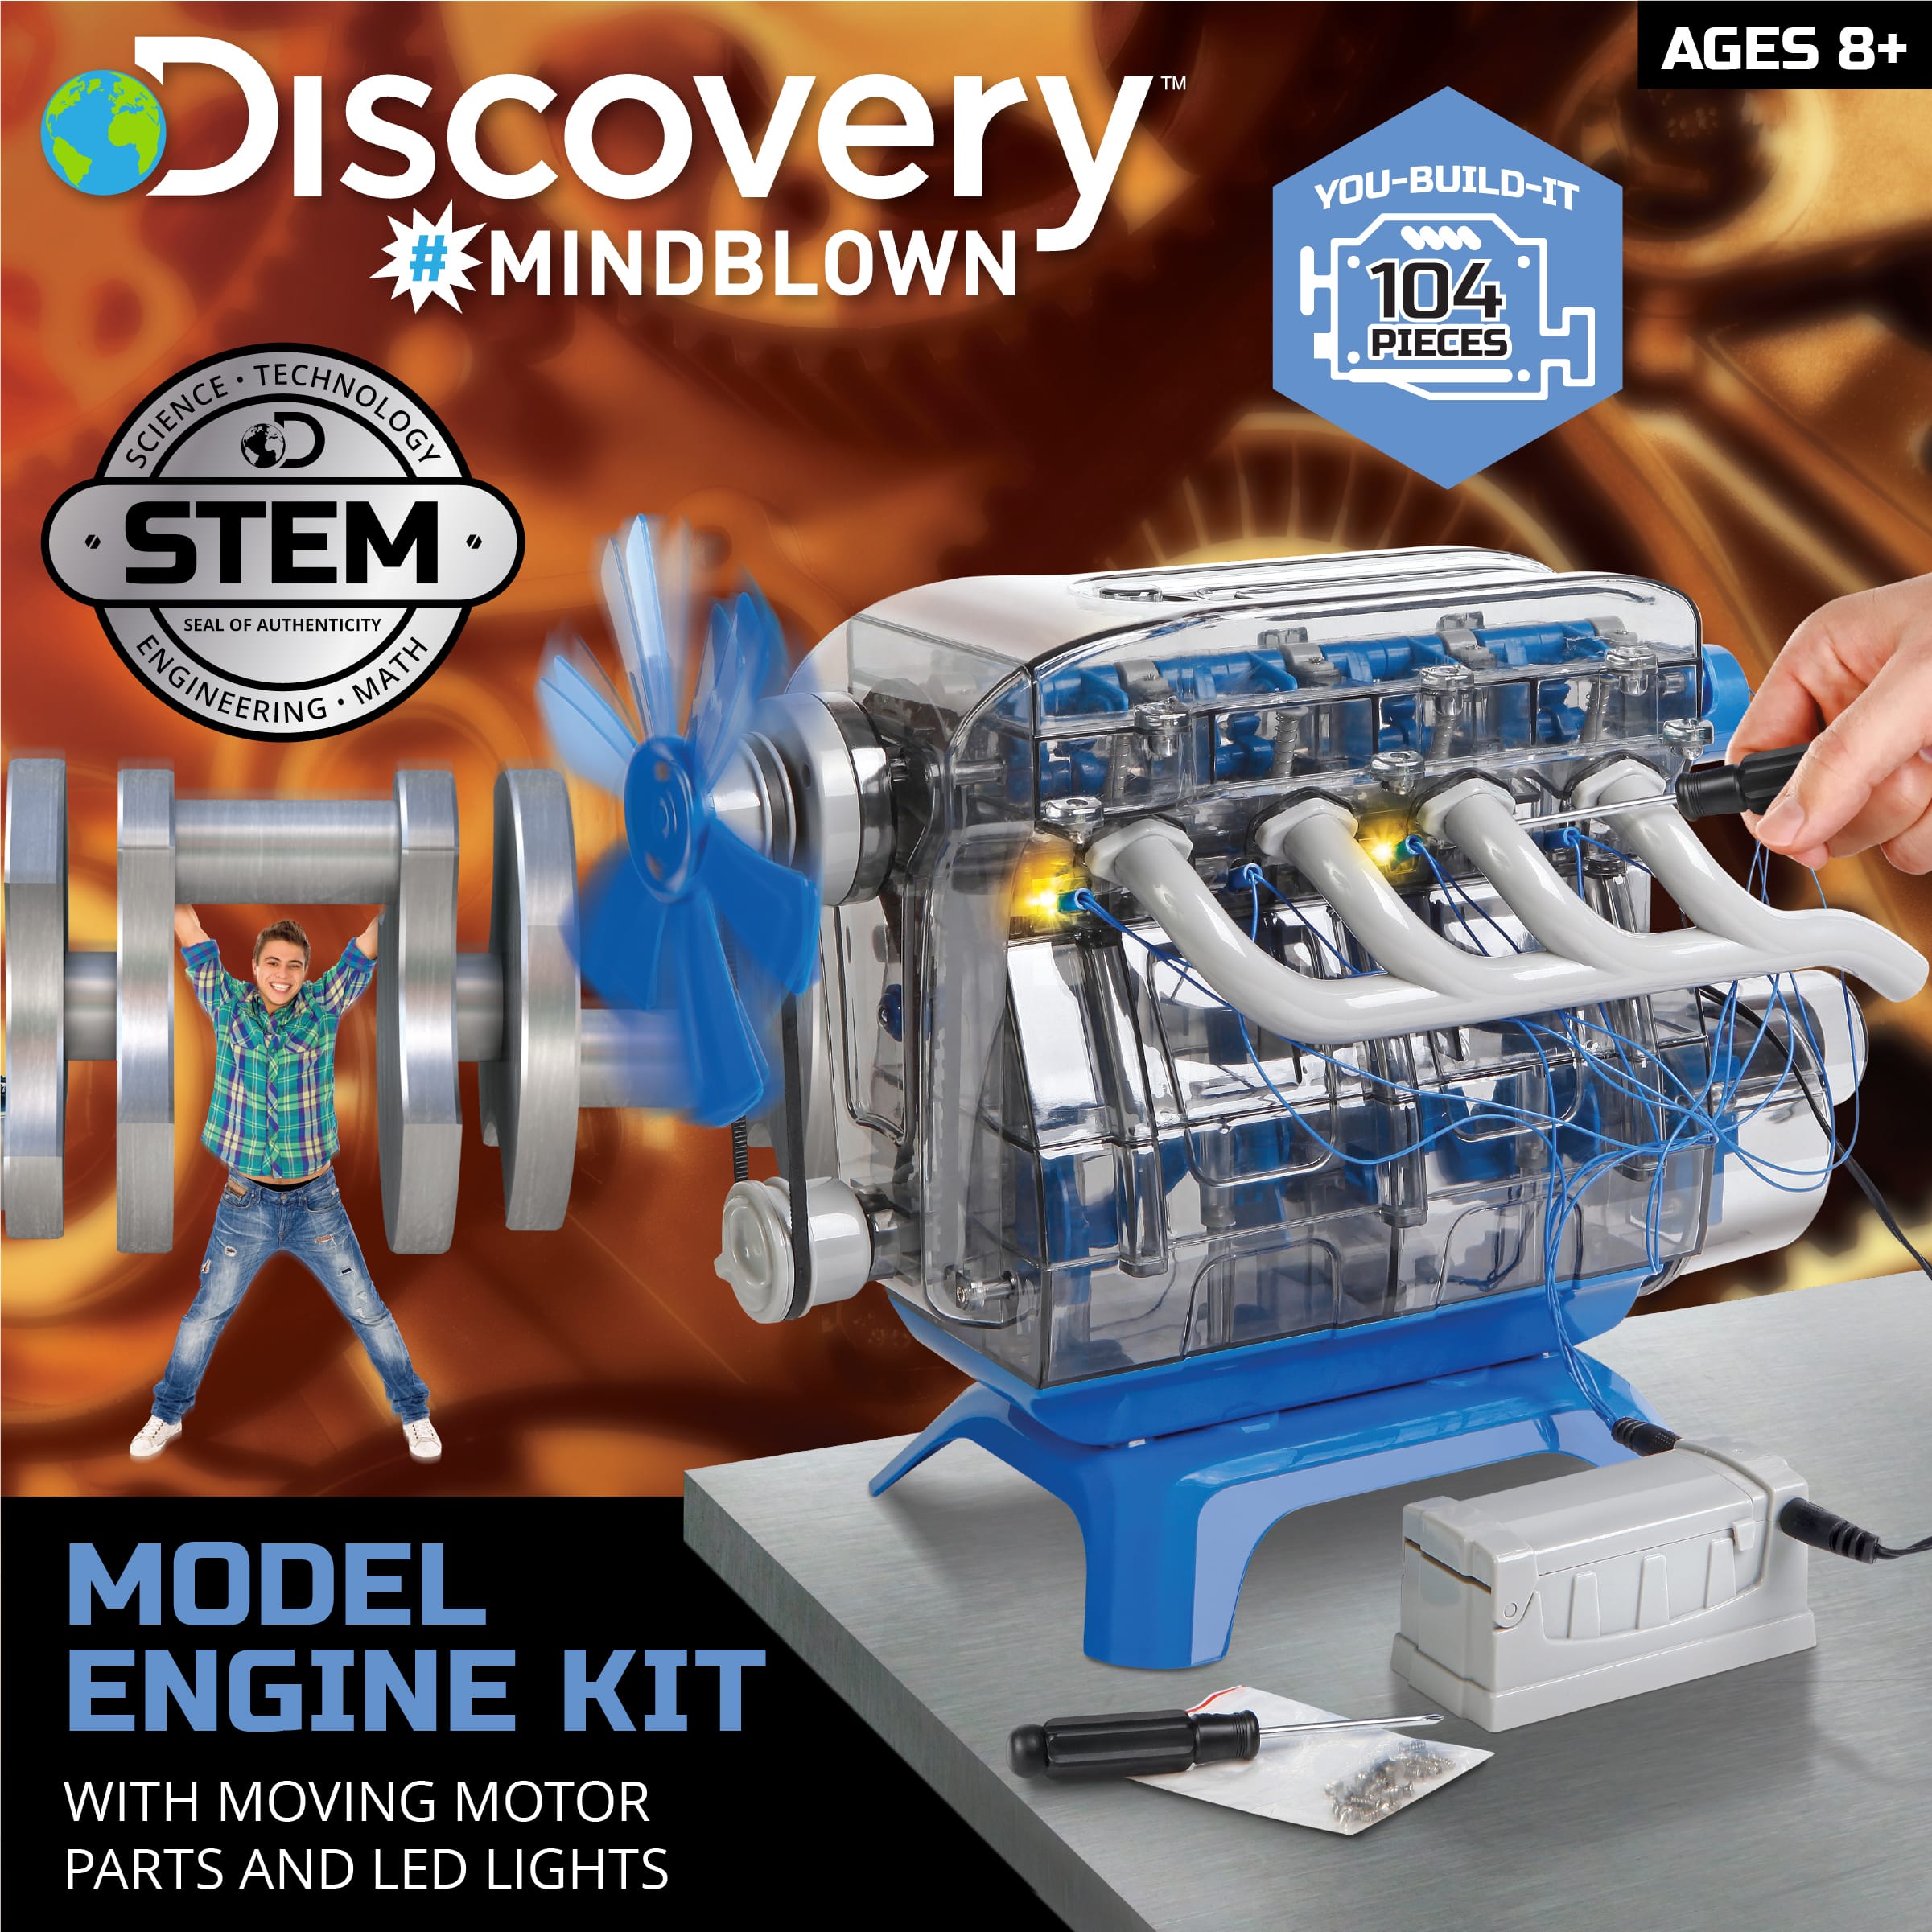 Modèle réduit de moteur Discovery #Mindblown, 8 ans et plus